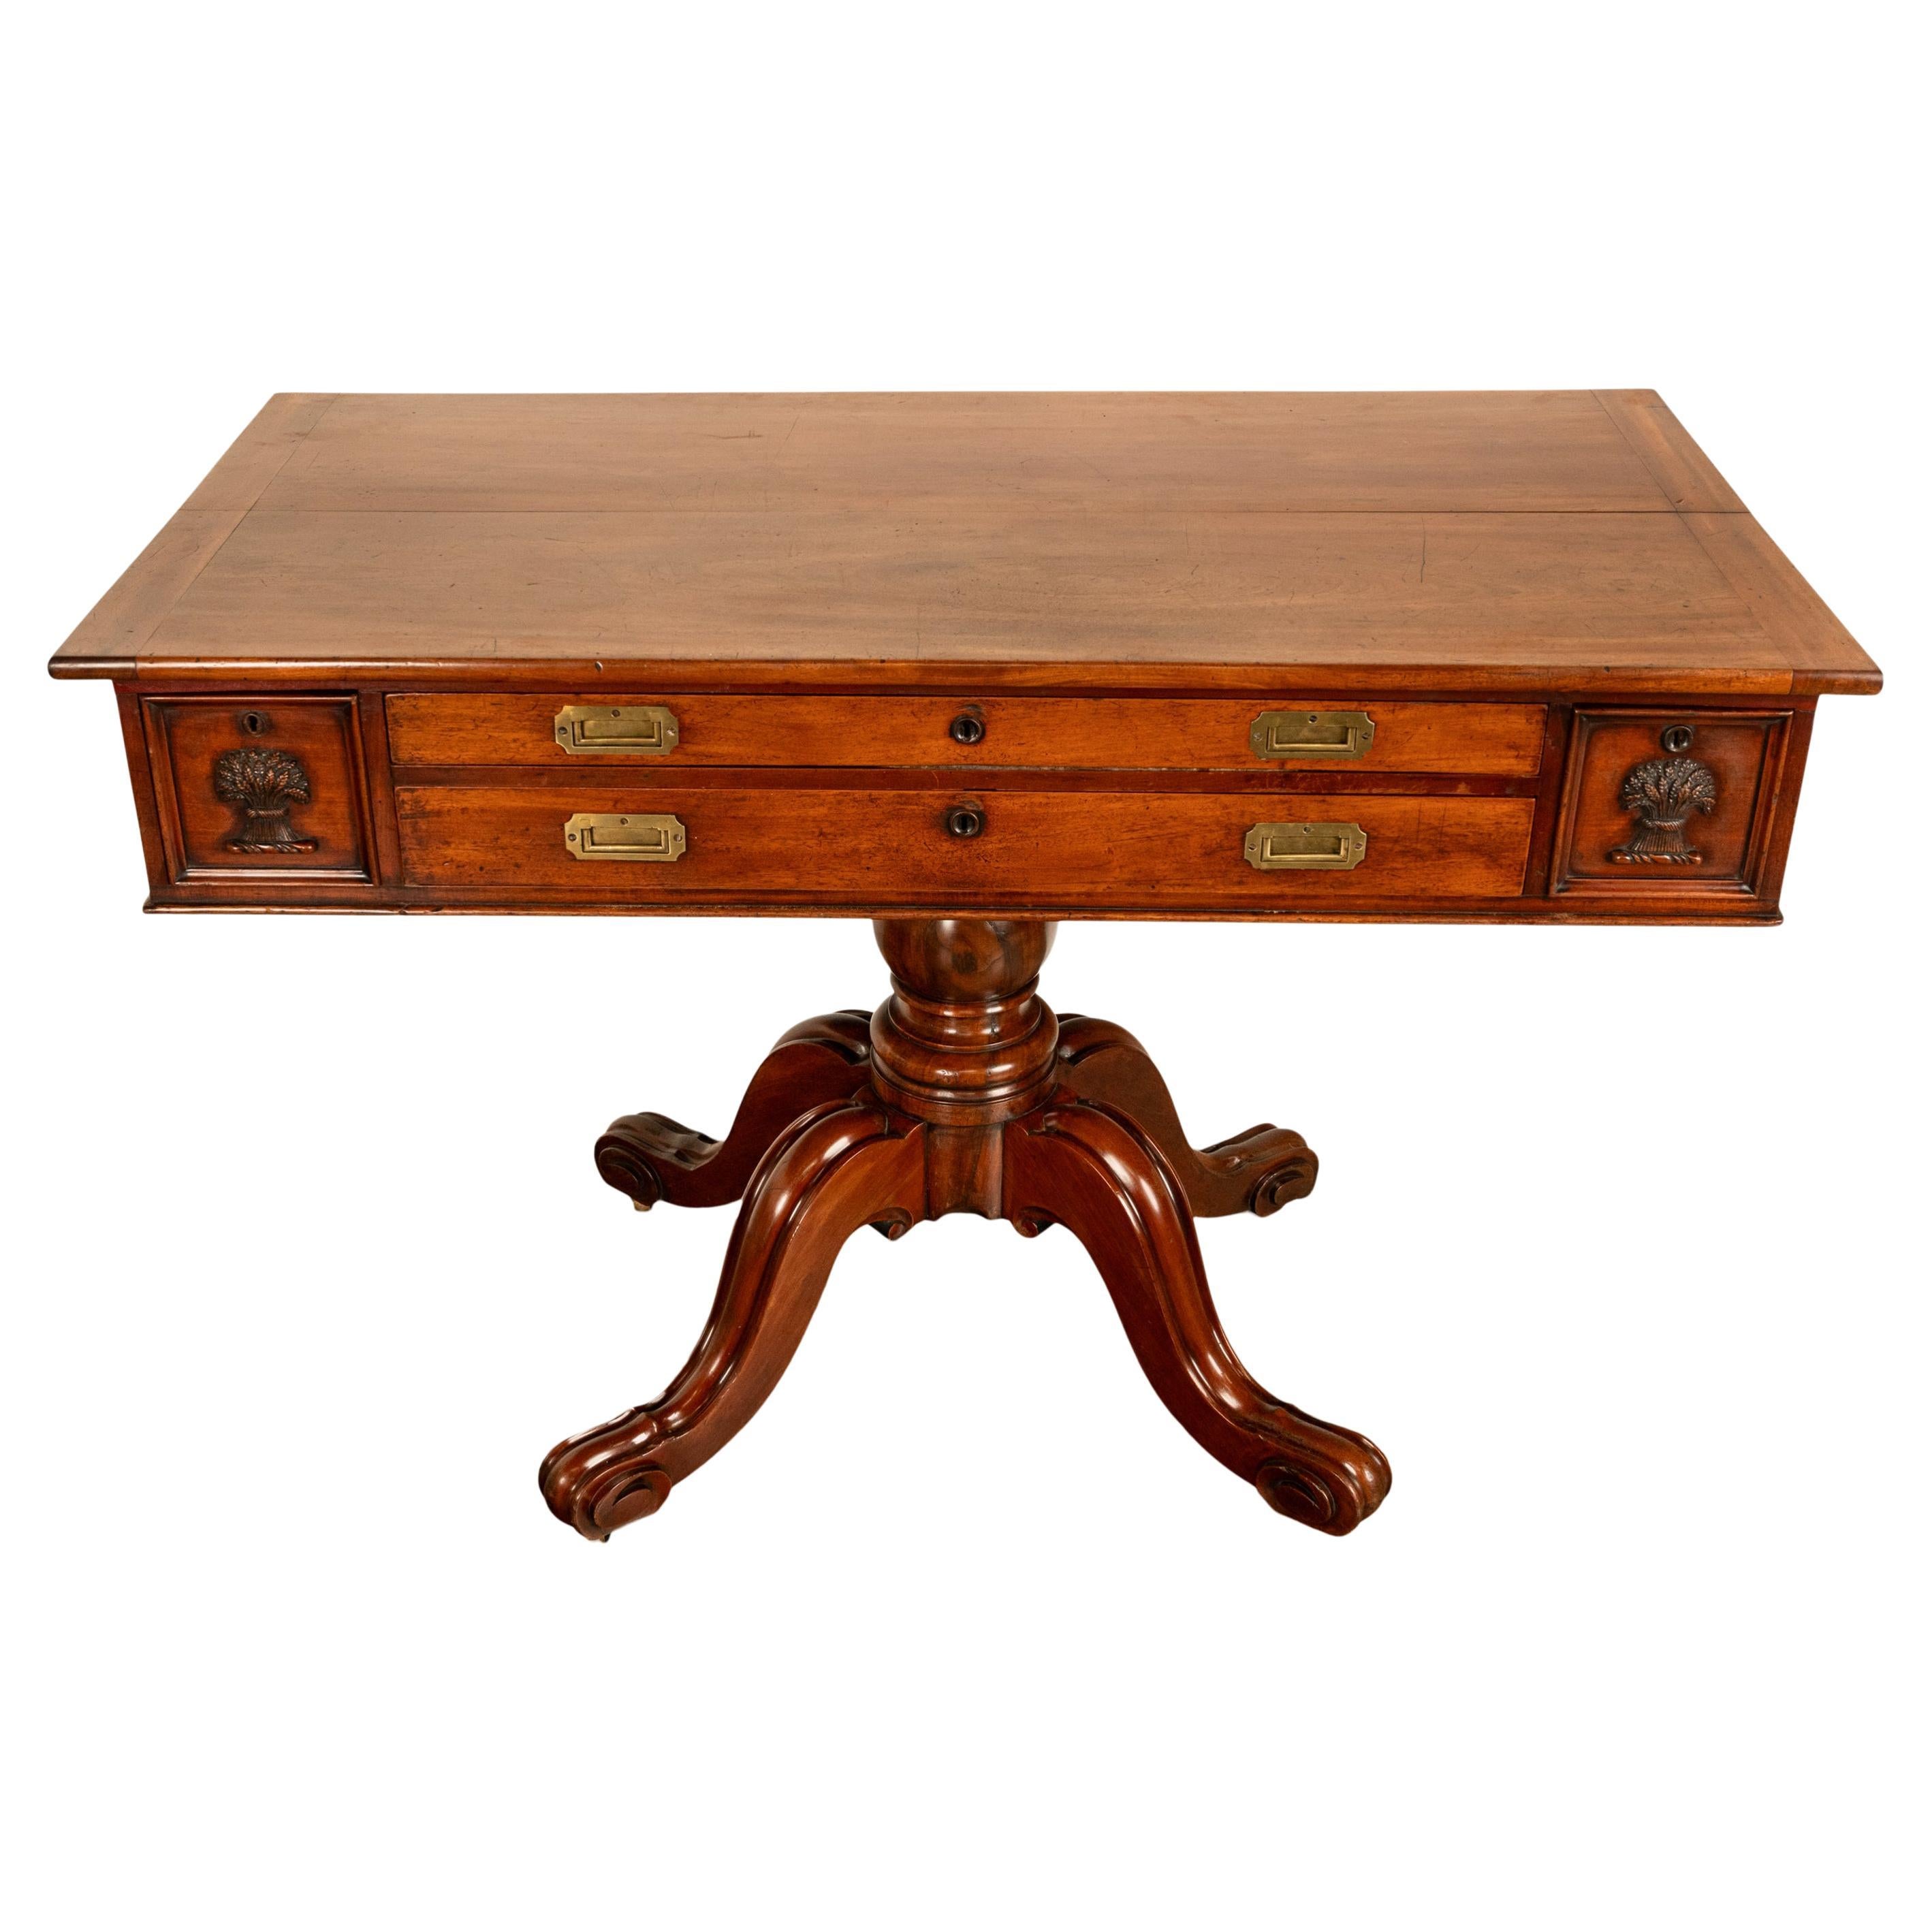 Eine gute und ungewöhnliche 19. Jahrhundert antiken Mahagoni-Sockel Architekten Zeichnung Tisch, Schreibtisch, um 1870.
Der Schreibtisch/Zeichentisch hat eine aufklappbare Schreib-/Zeichenfläche, die hochgeklappt oder flach sein kann. An der